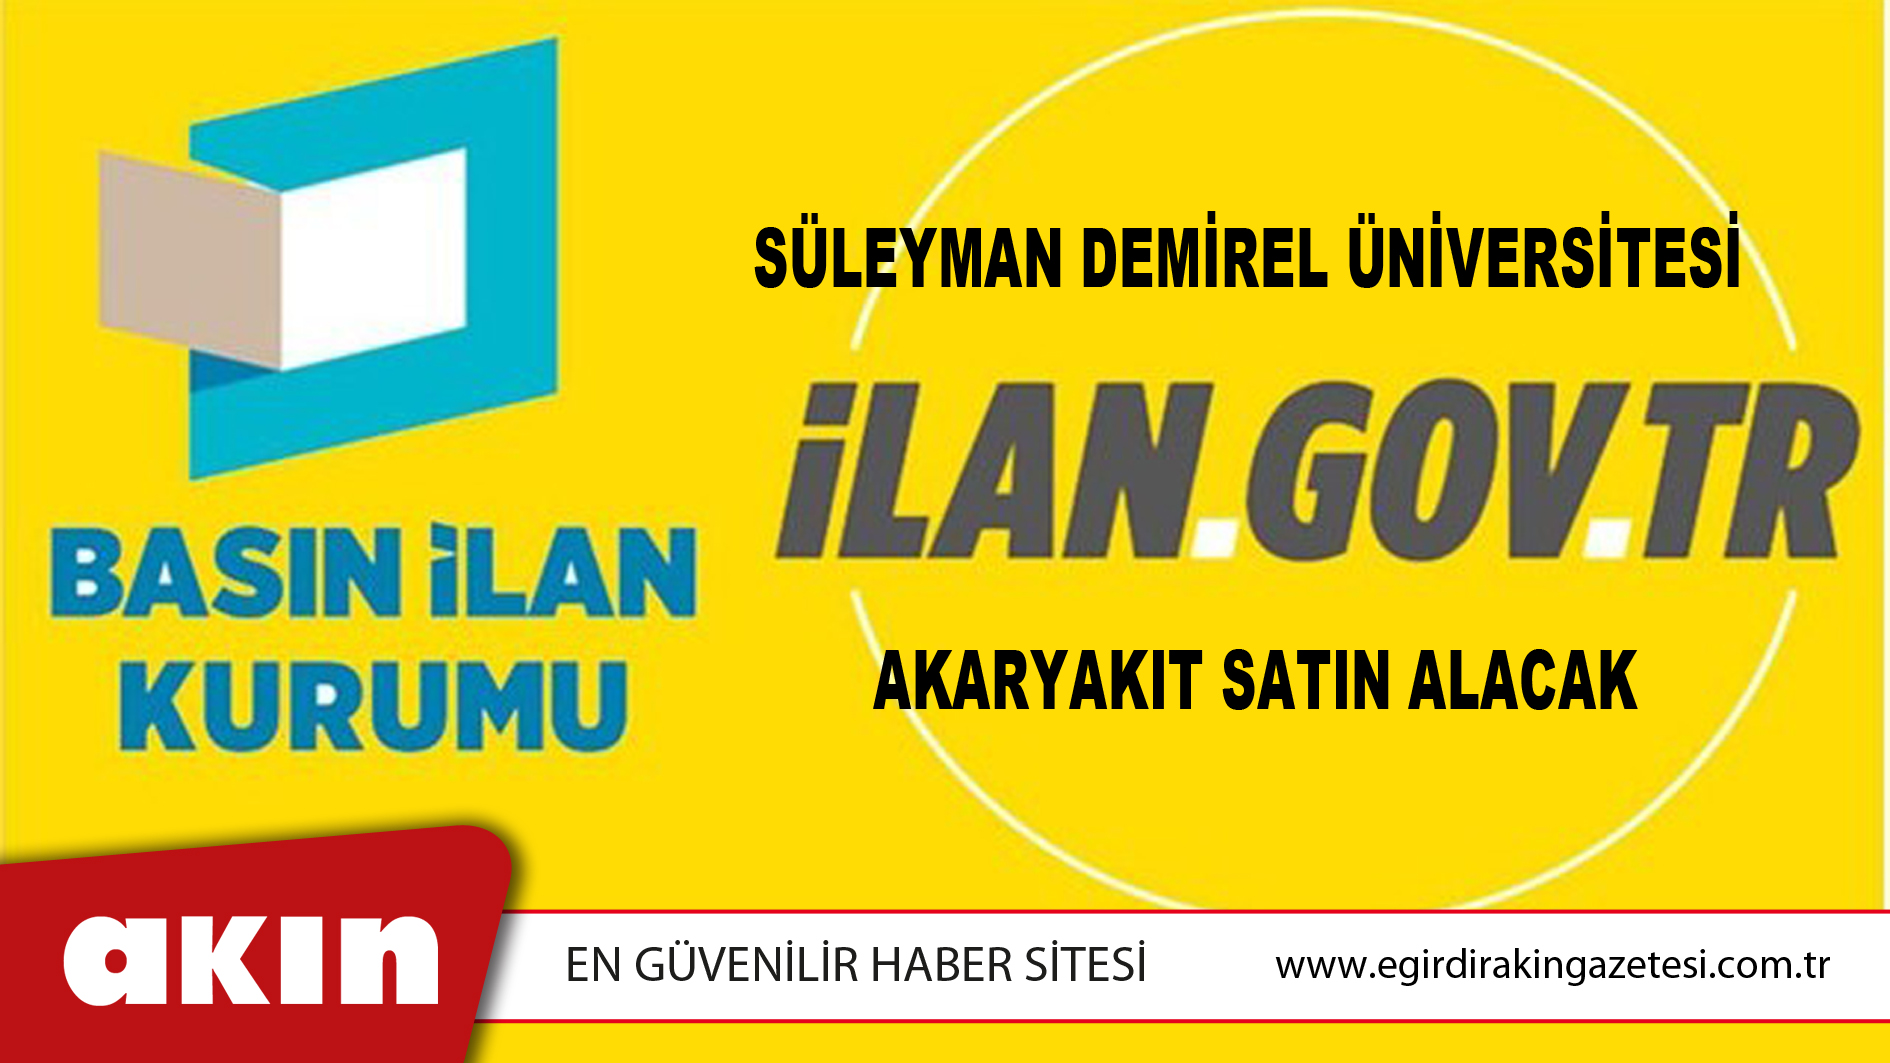 Süleyman Demirel Üniversitesi Akaryakıt Satın Alacak